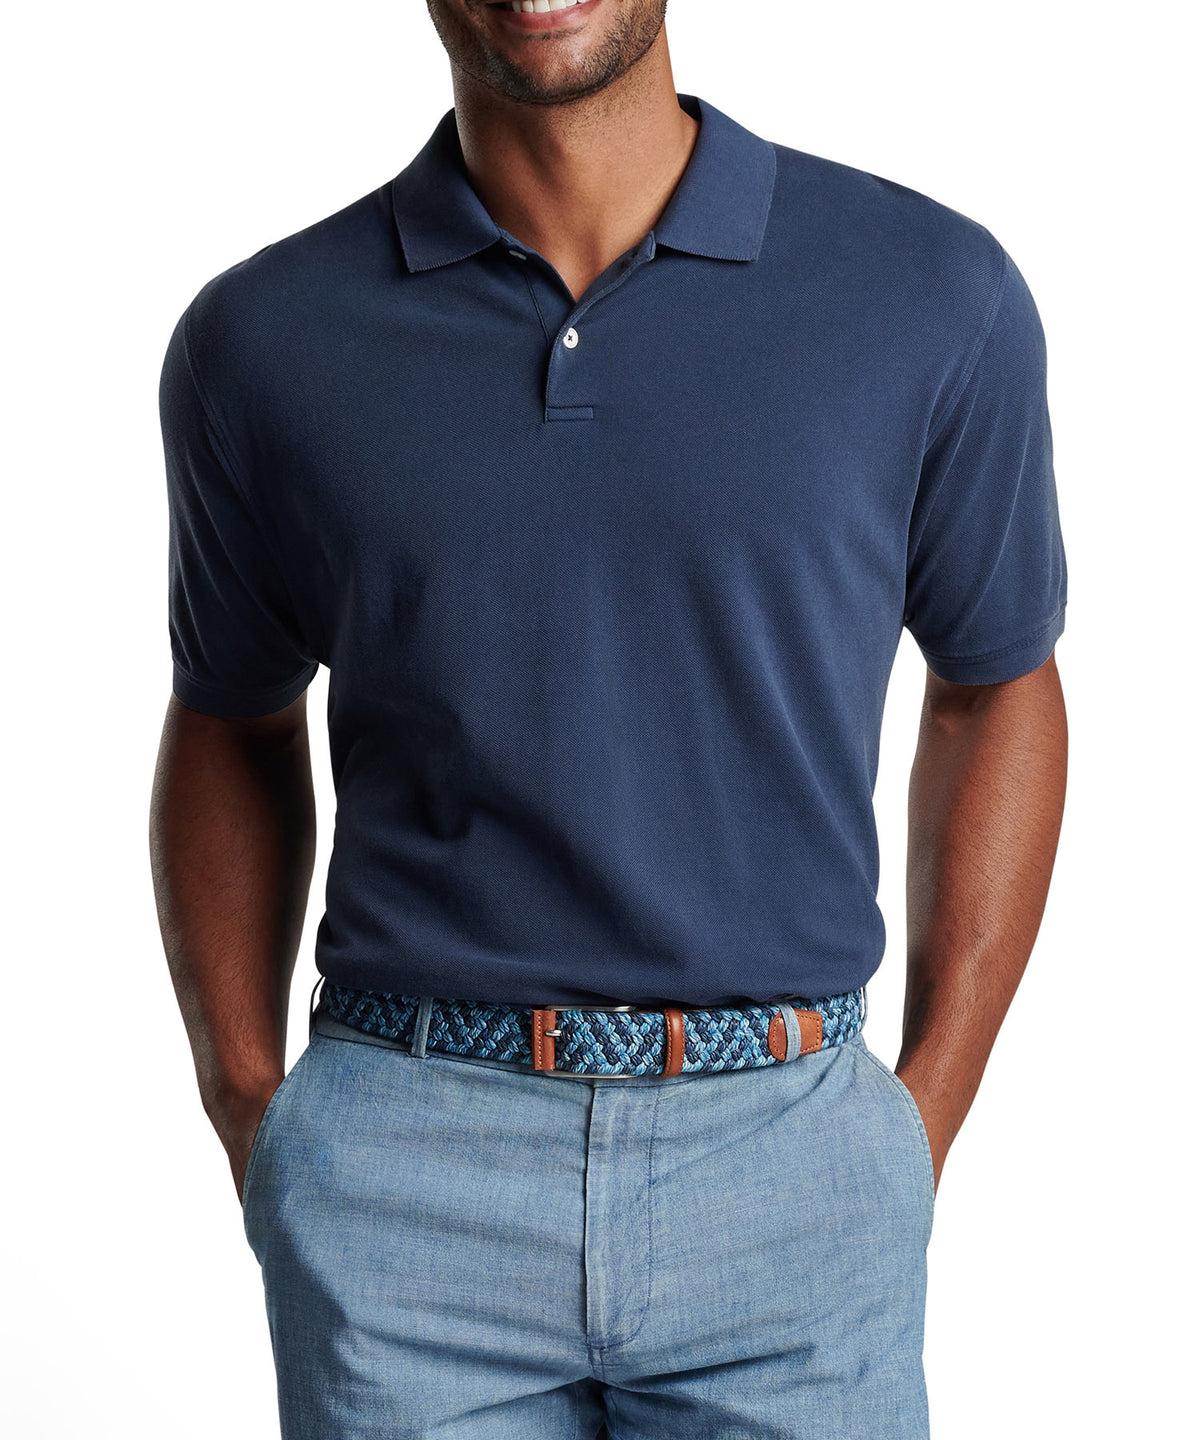 Peter Millar Short Sleeve Sunrise Pique Polo Knit Shirt, Men's Big & Tall